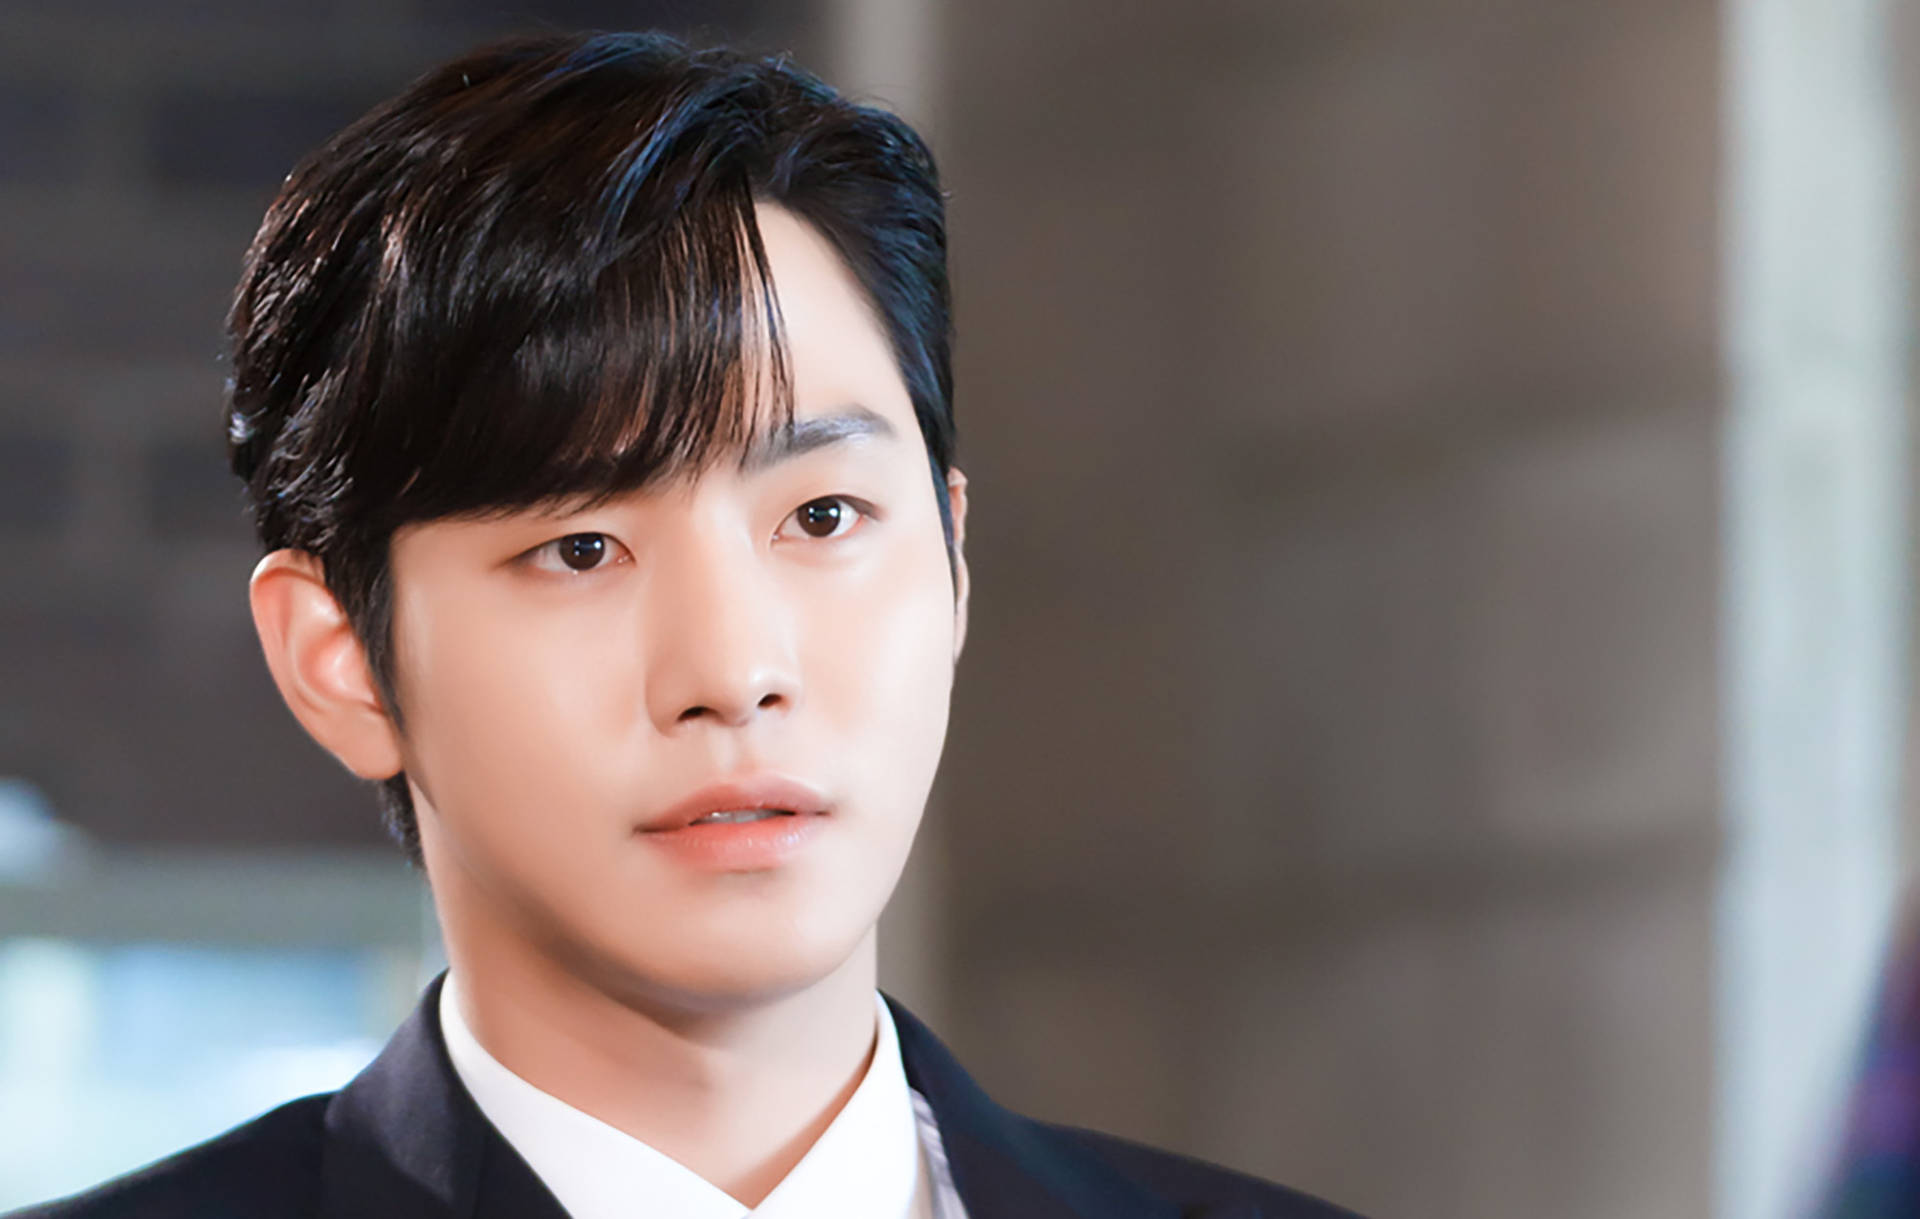 Actor Ahn Yeo Seop Business Proposal